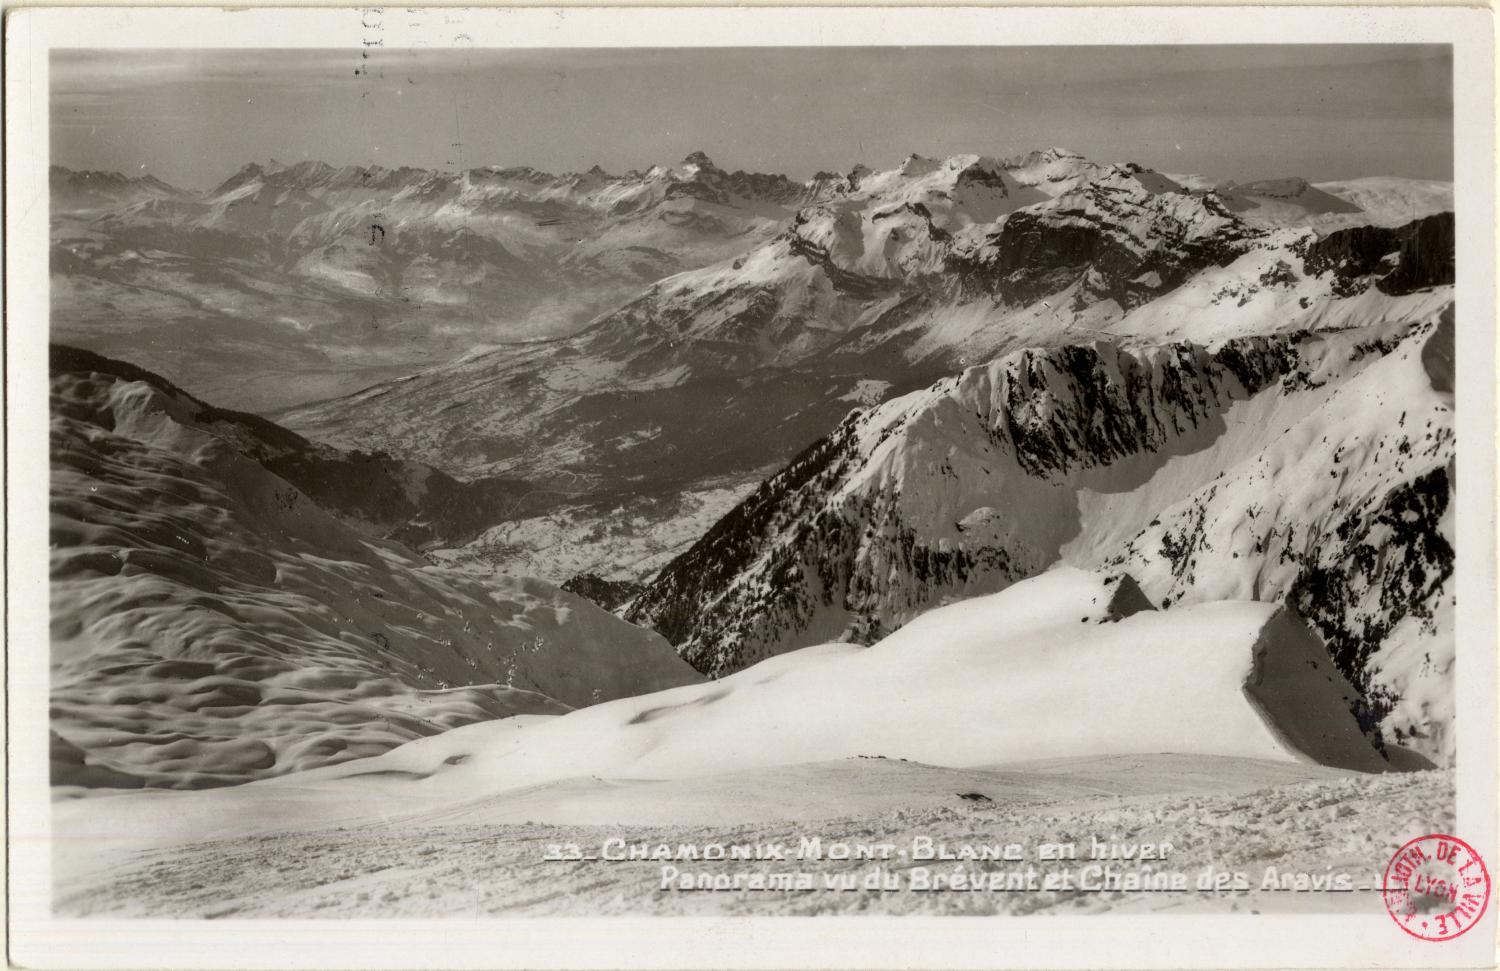 Chamonix-Mont-Blanc en hiver : Panorama vu du Brévent et Chaîne des Aravis